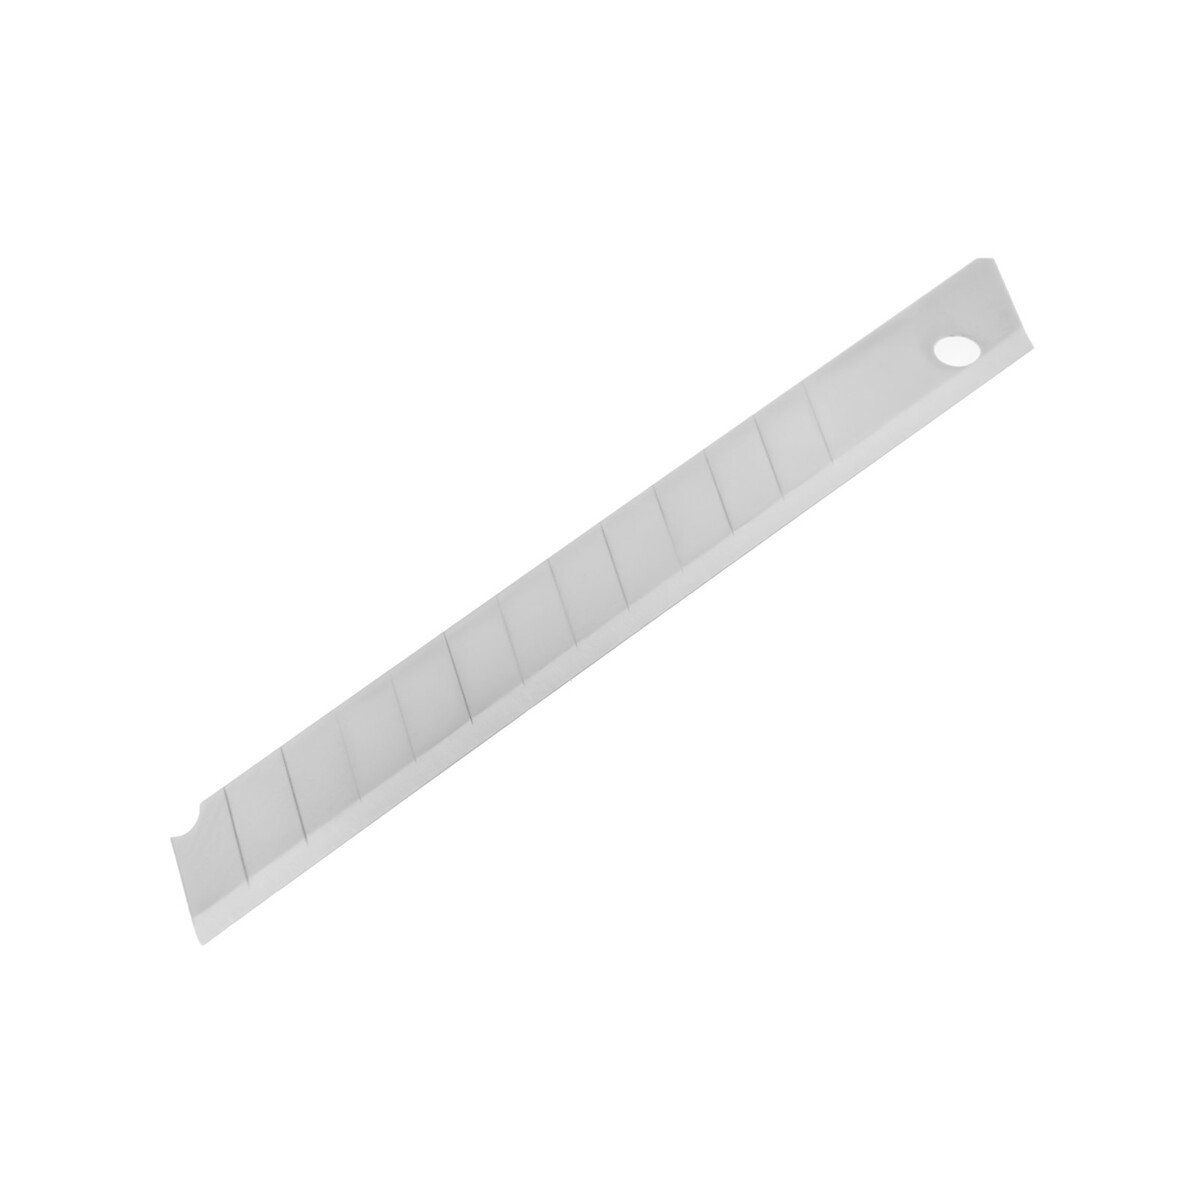 Лезвия для ножей тундра, сегментированные, 9 мм, 10 шт.